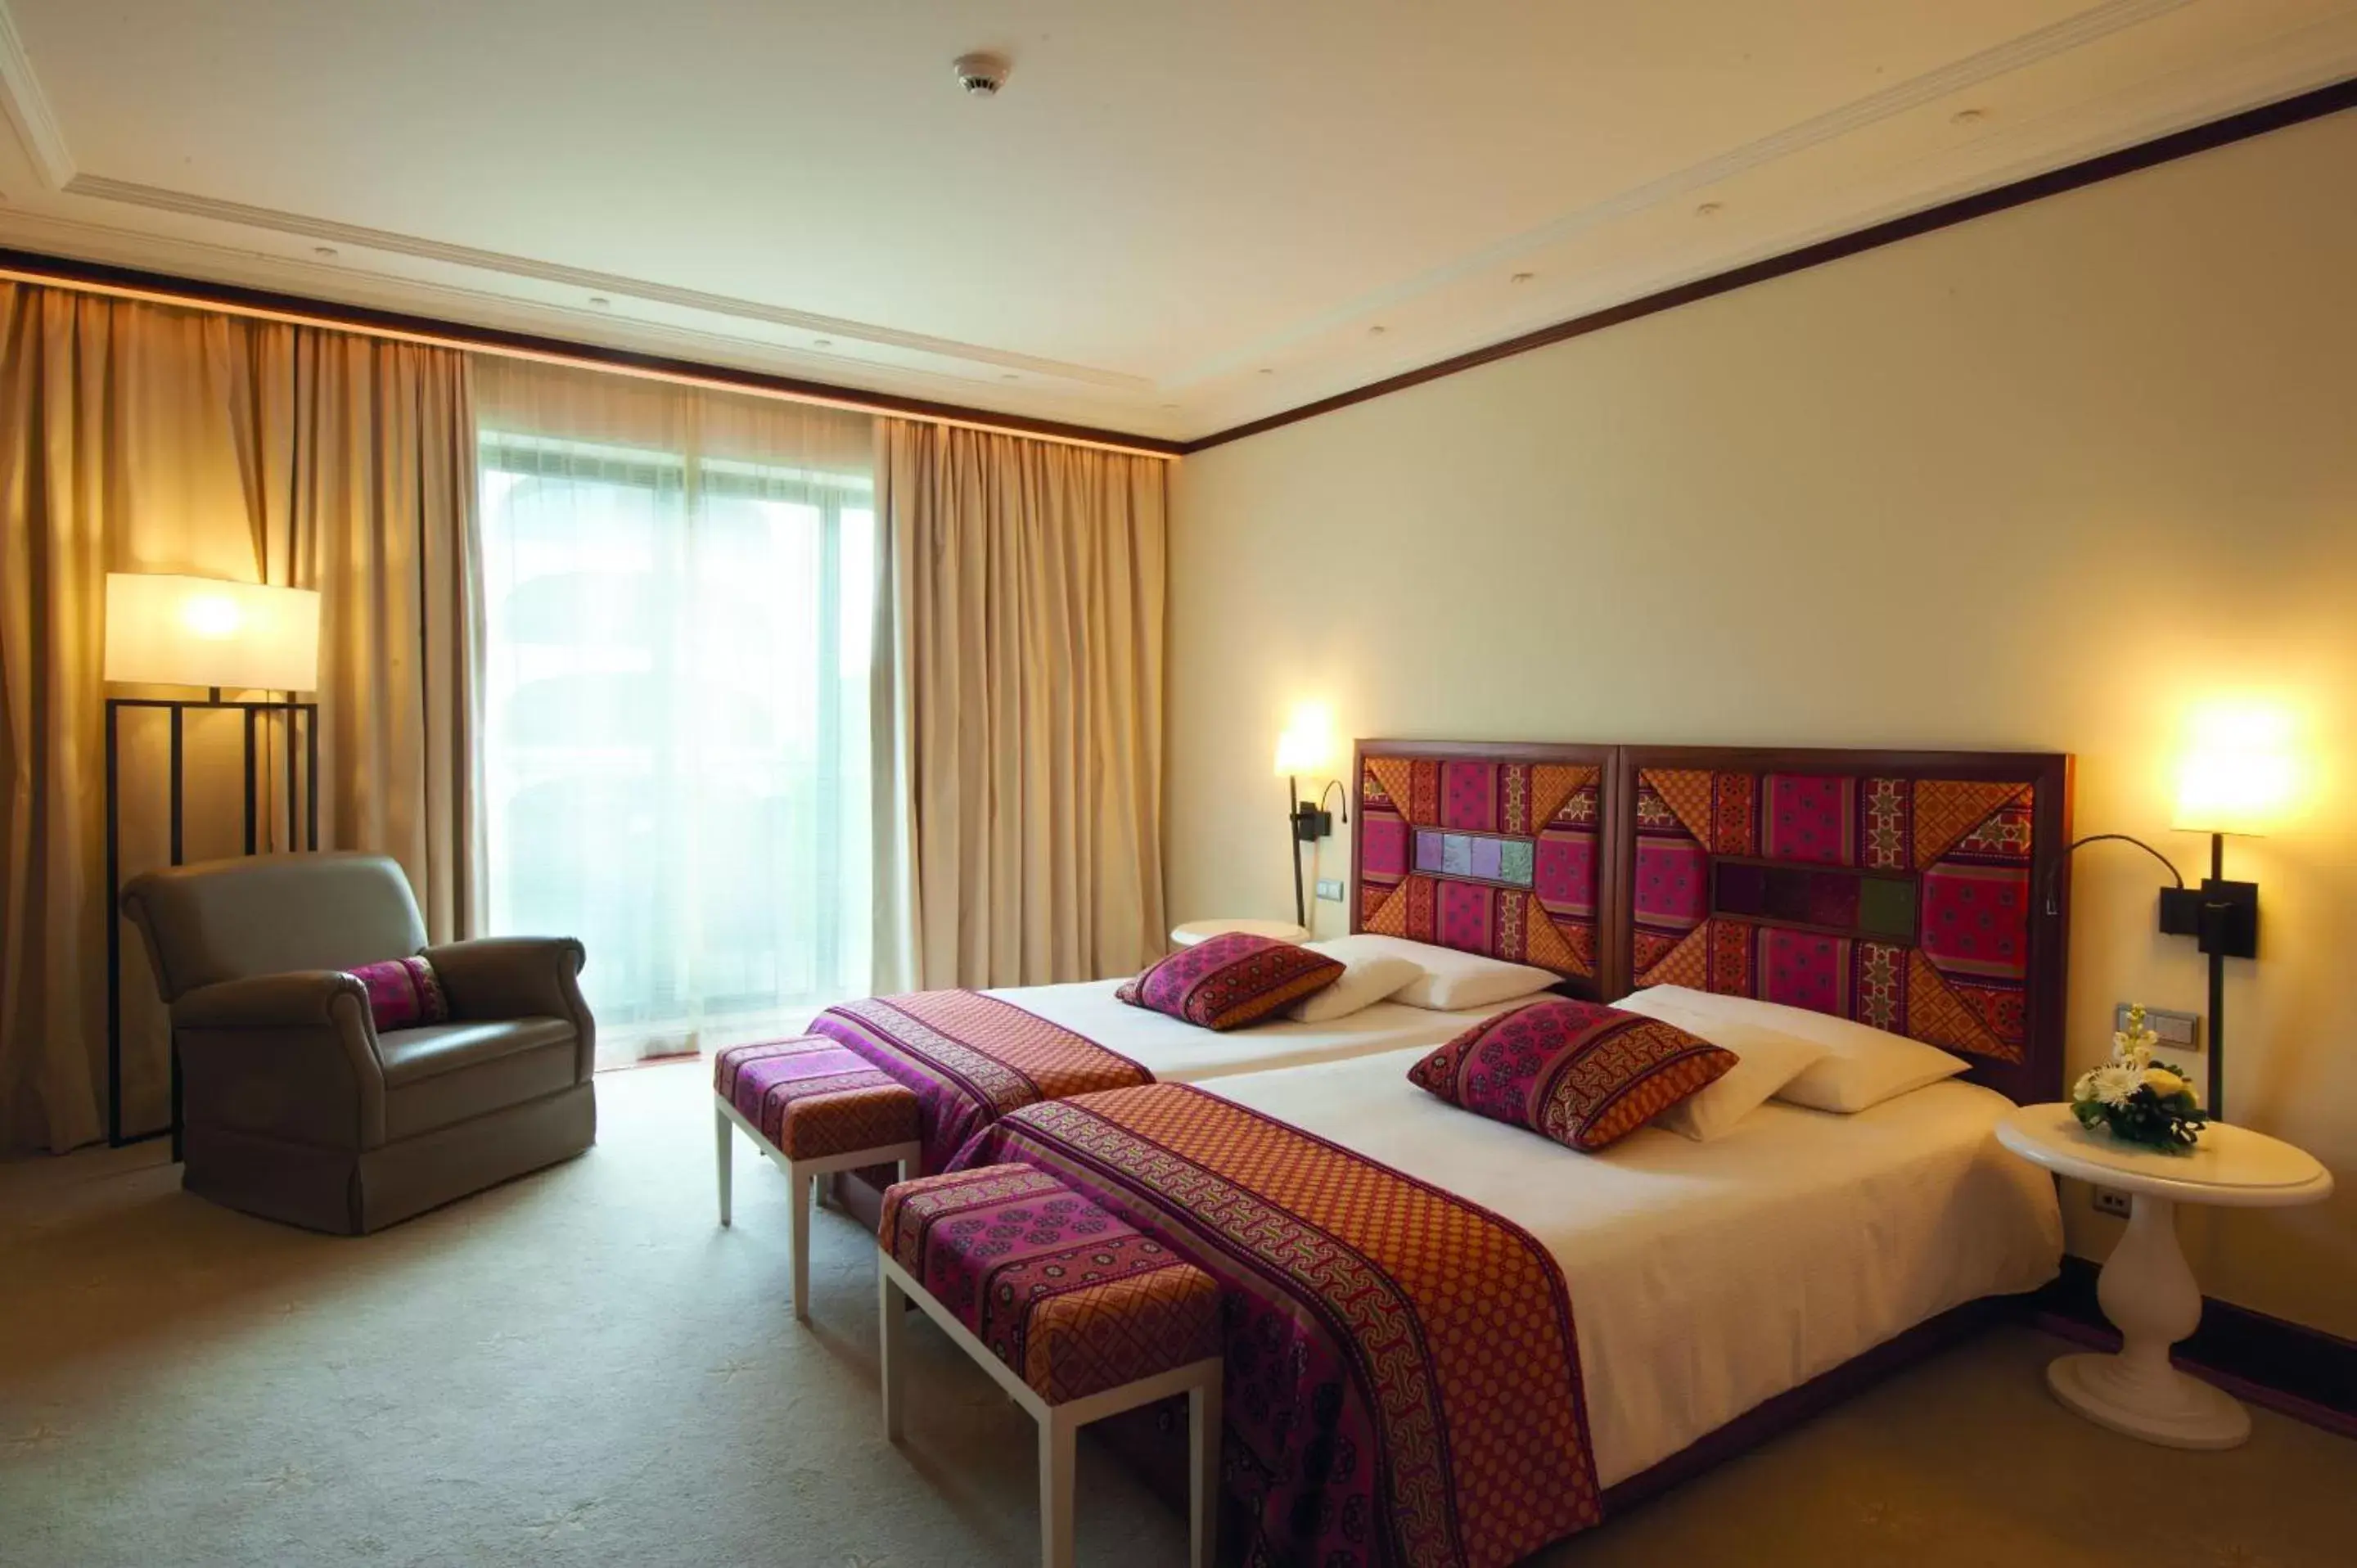 Bedroom, Bed in Grande Real Villa Itália Hotel & Spa